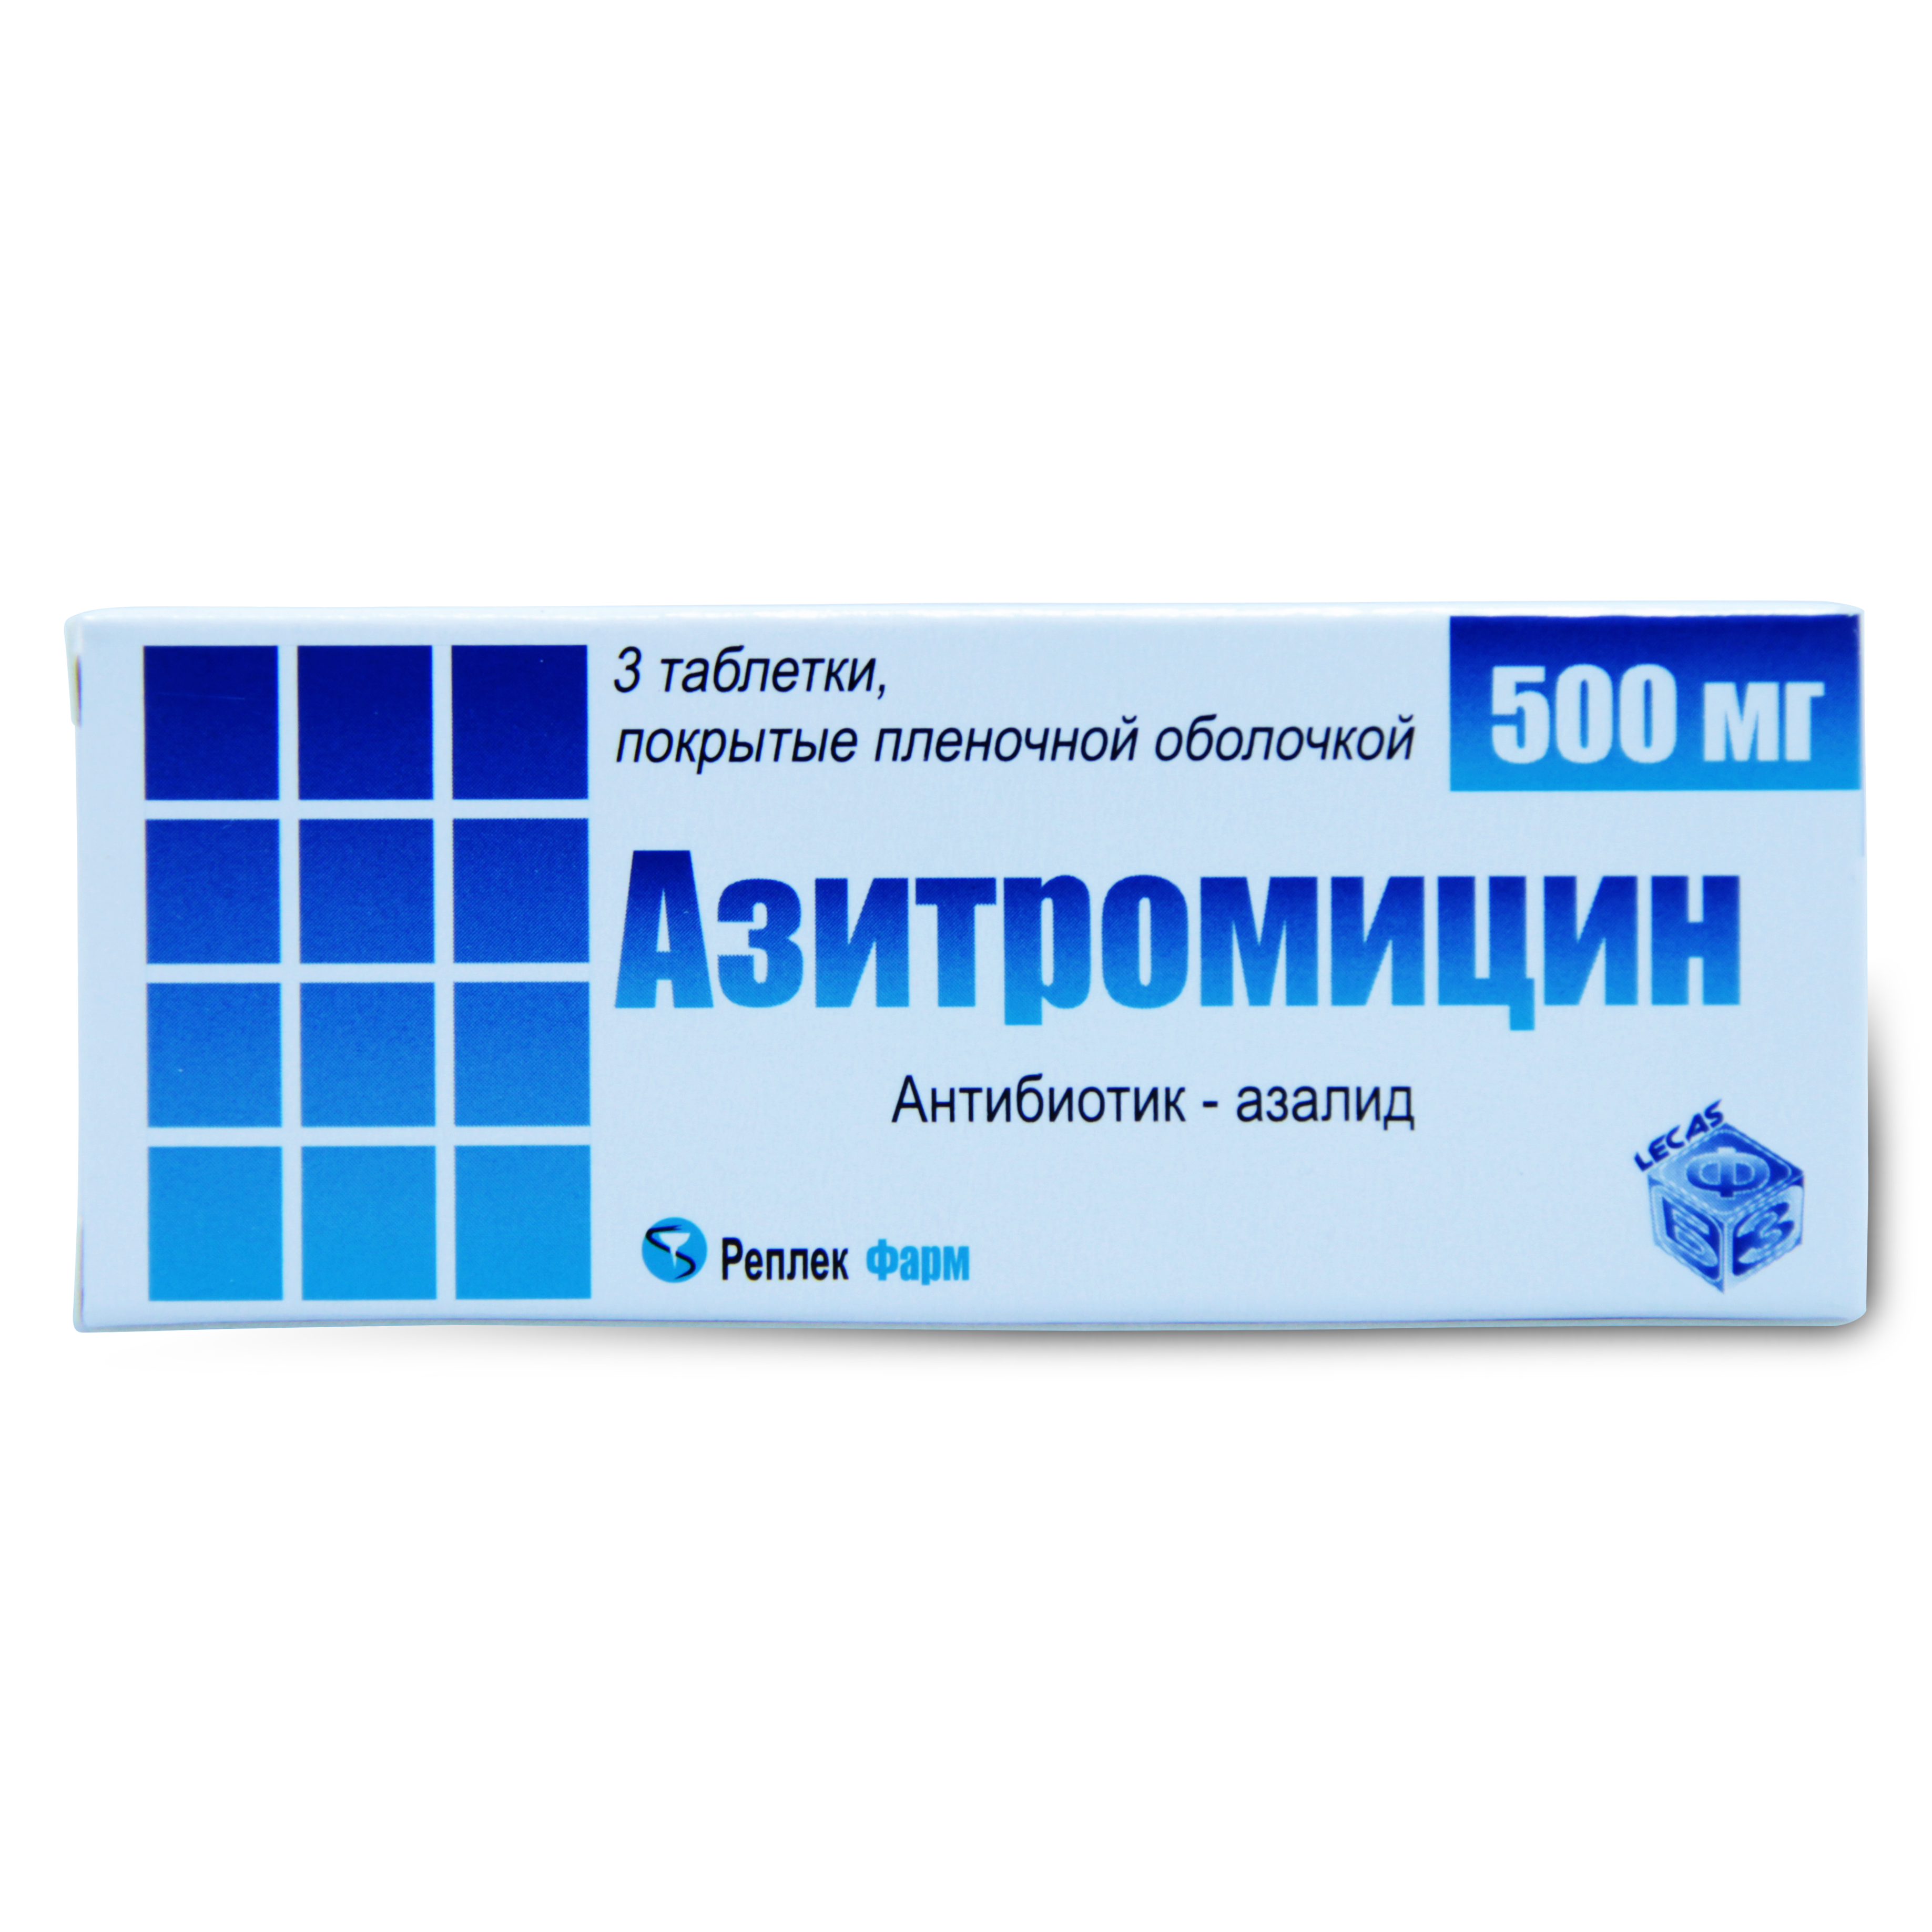 антибиотик азитромицин 3 таблетки фото